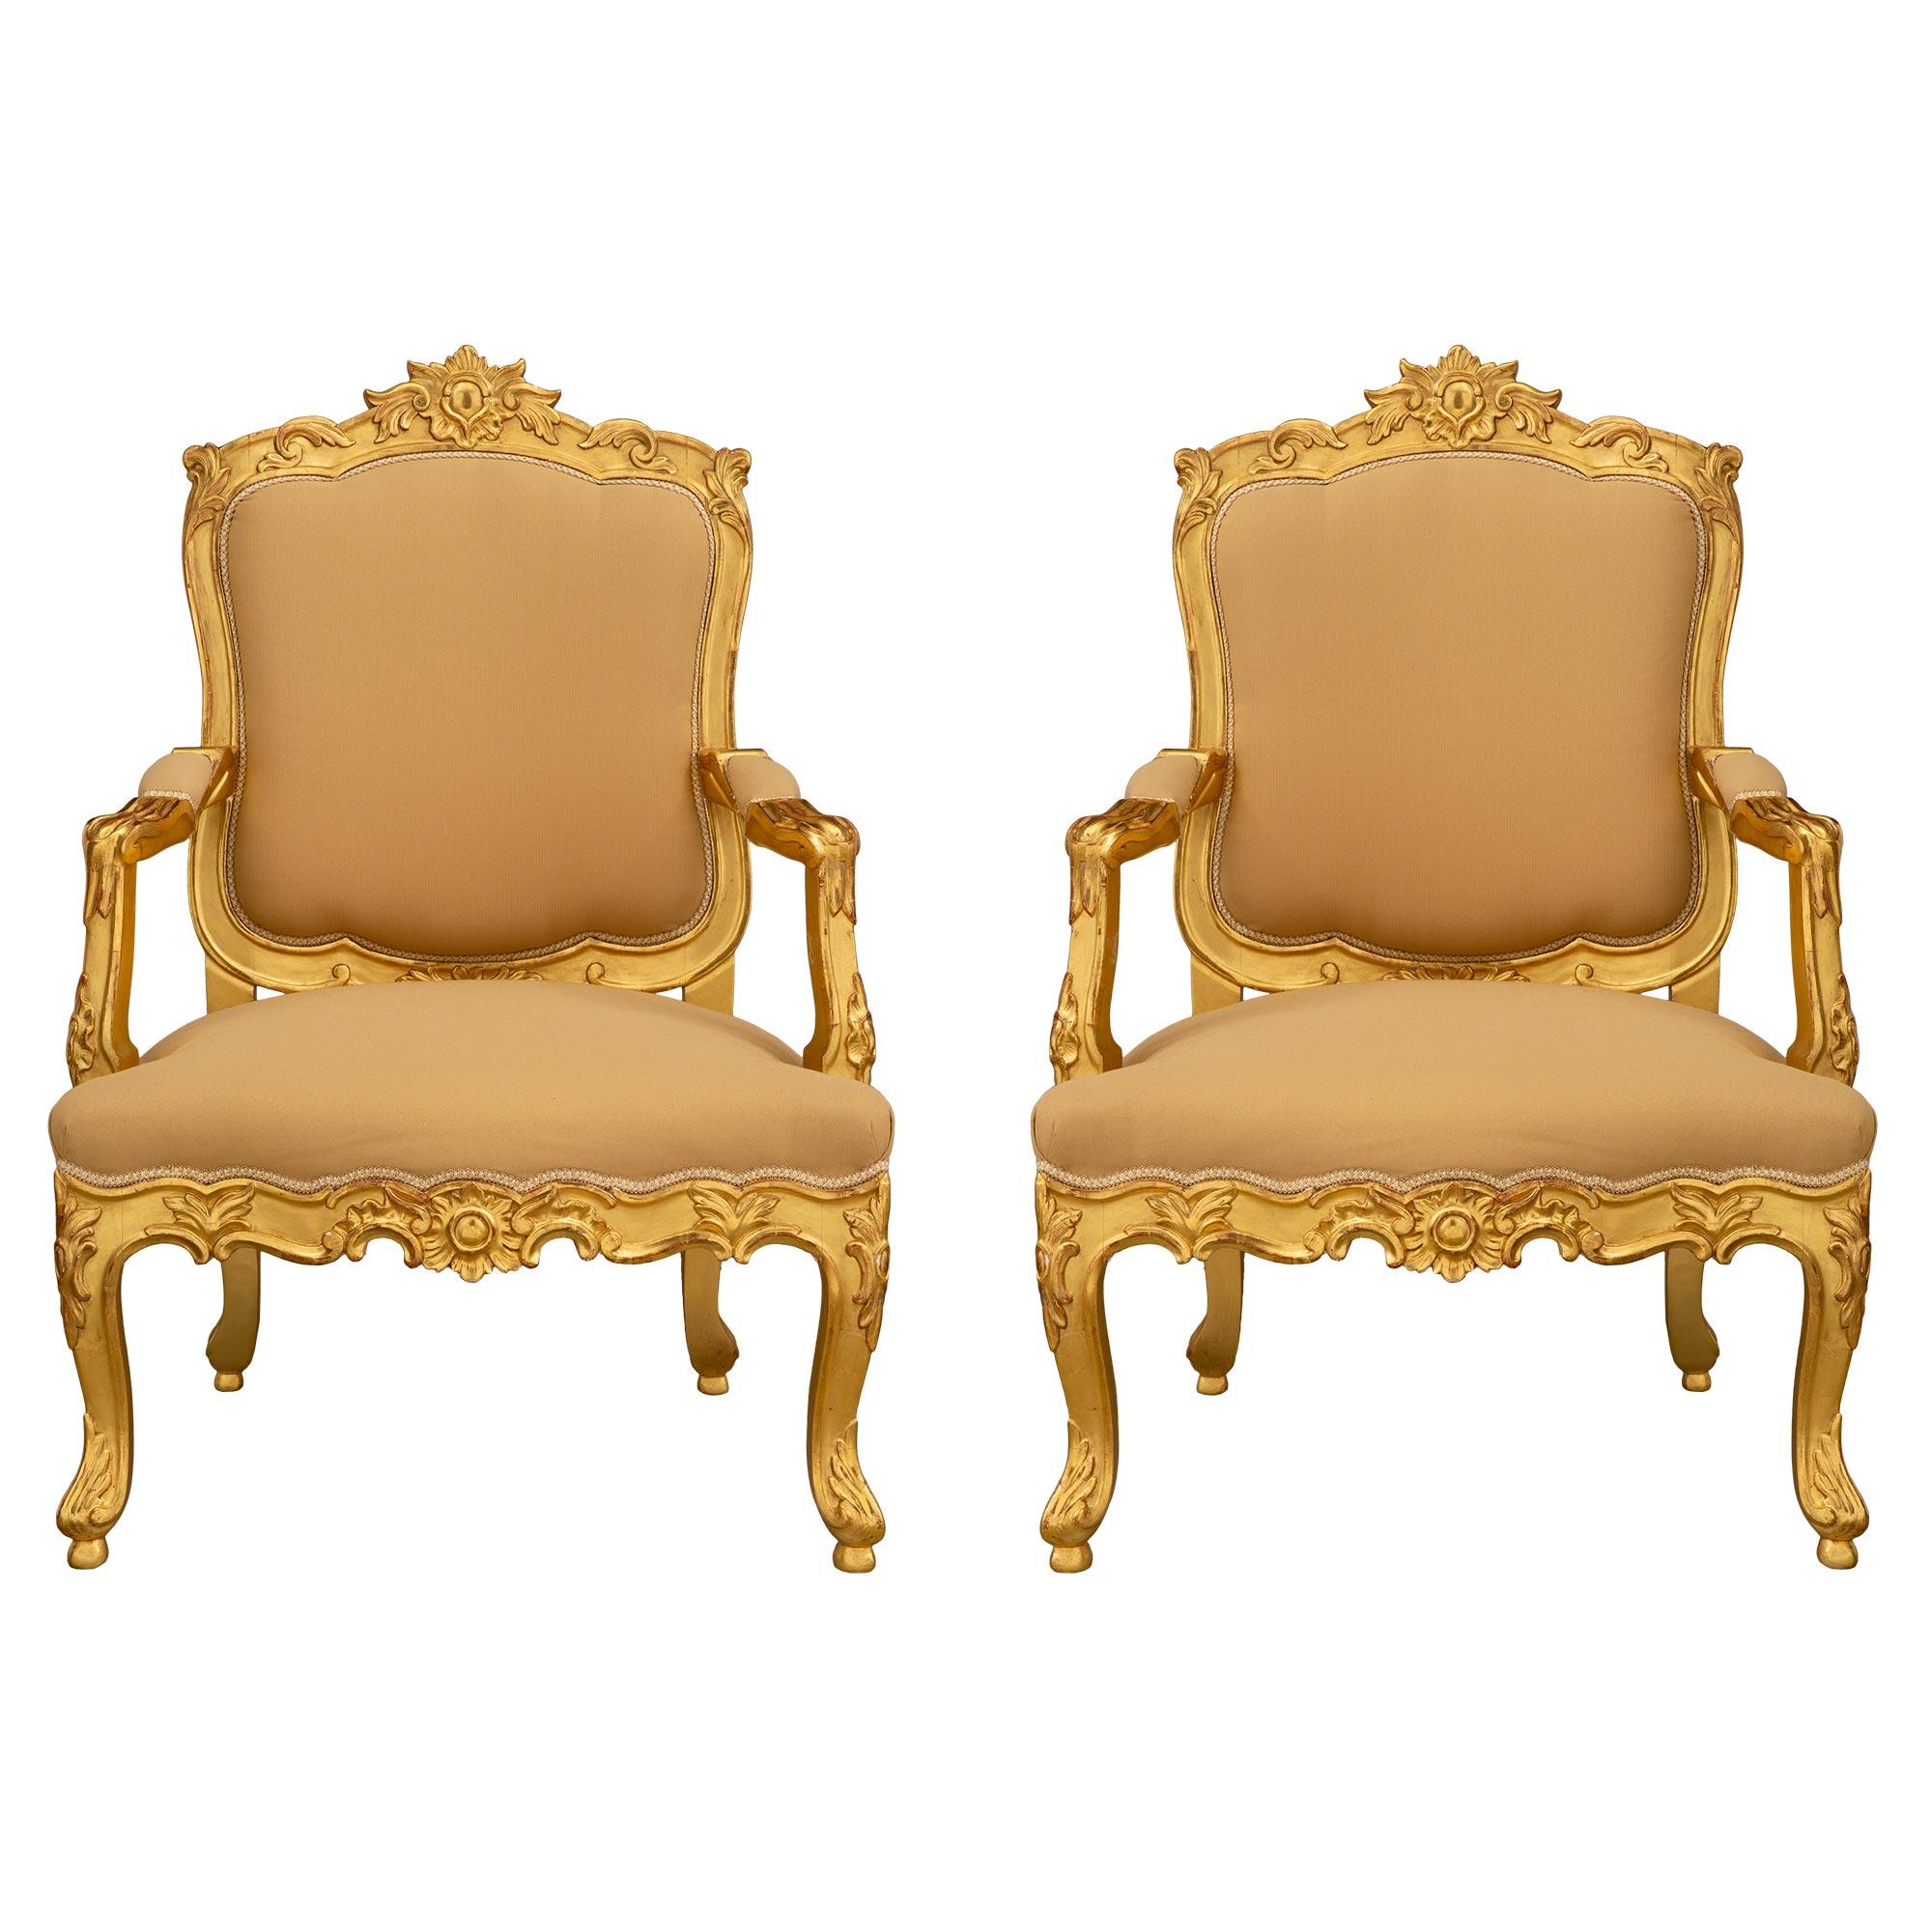 Paire de fauteuils italiens en bois doré de style Louis XV du 19ème siècle